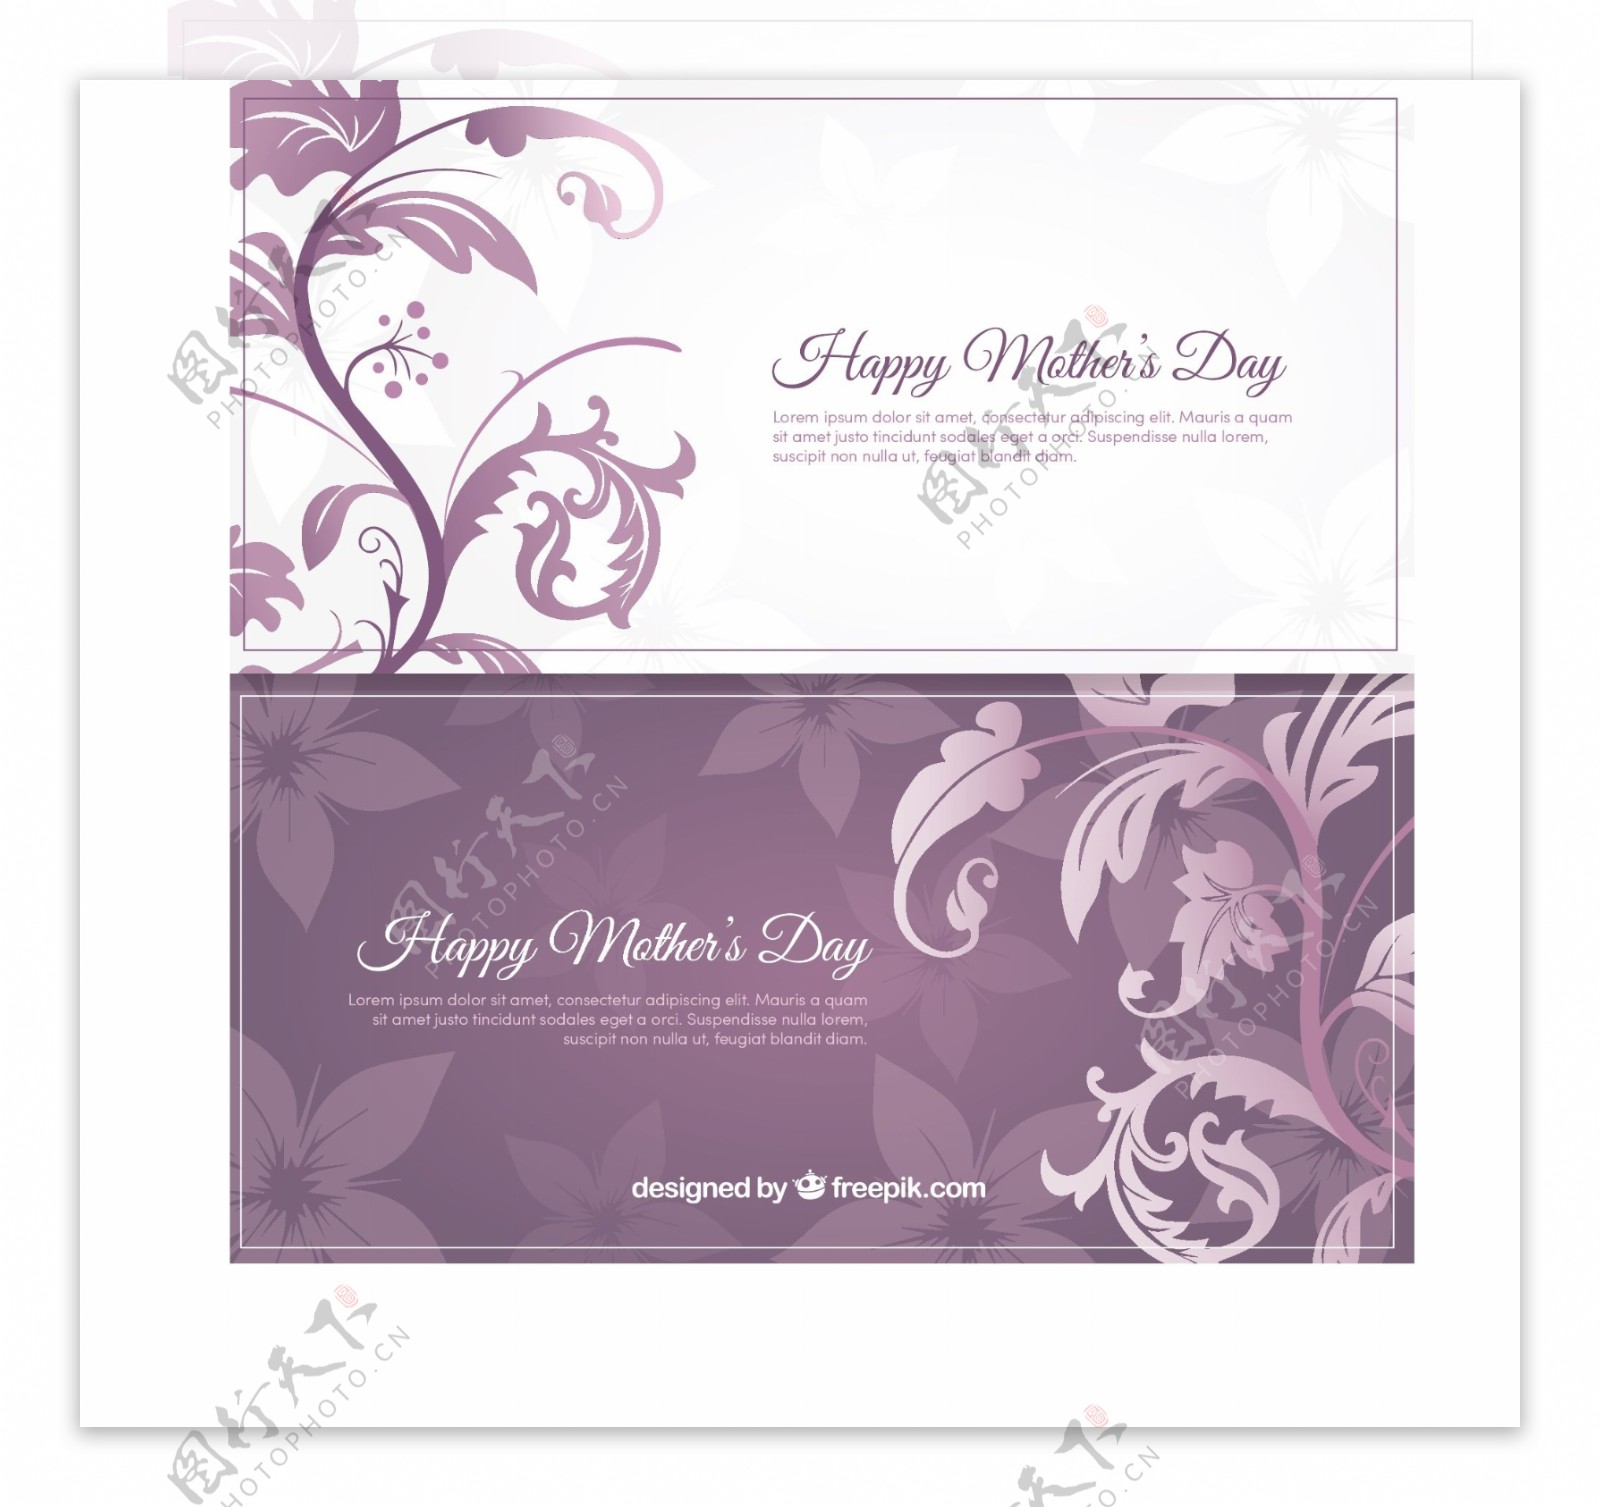 白色和紫色快乐的母亲节